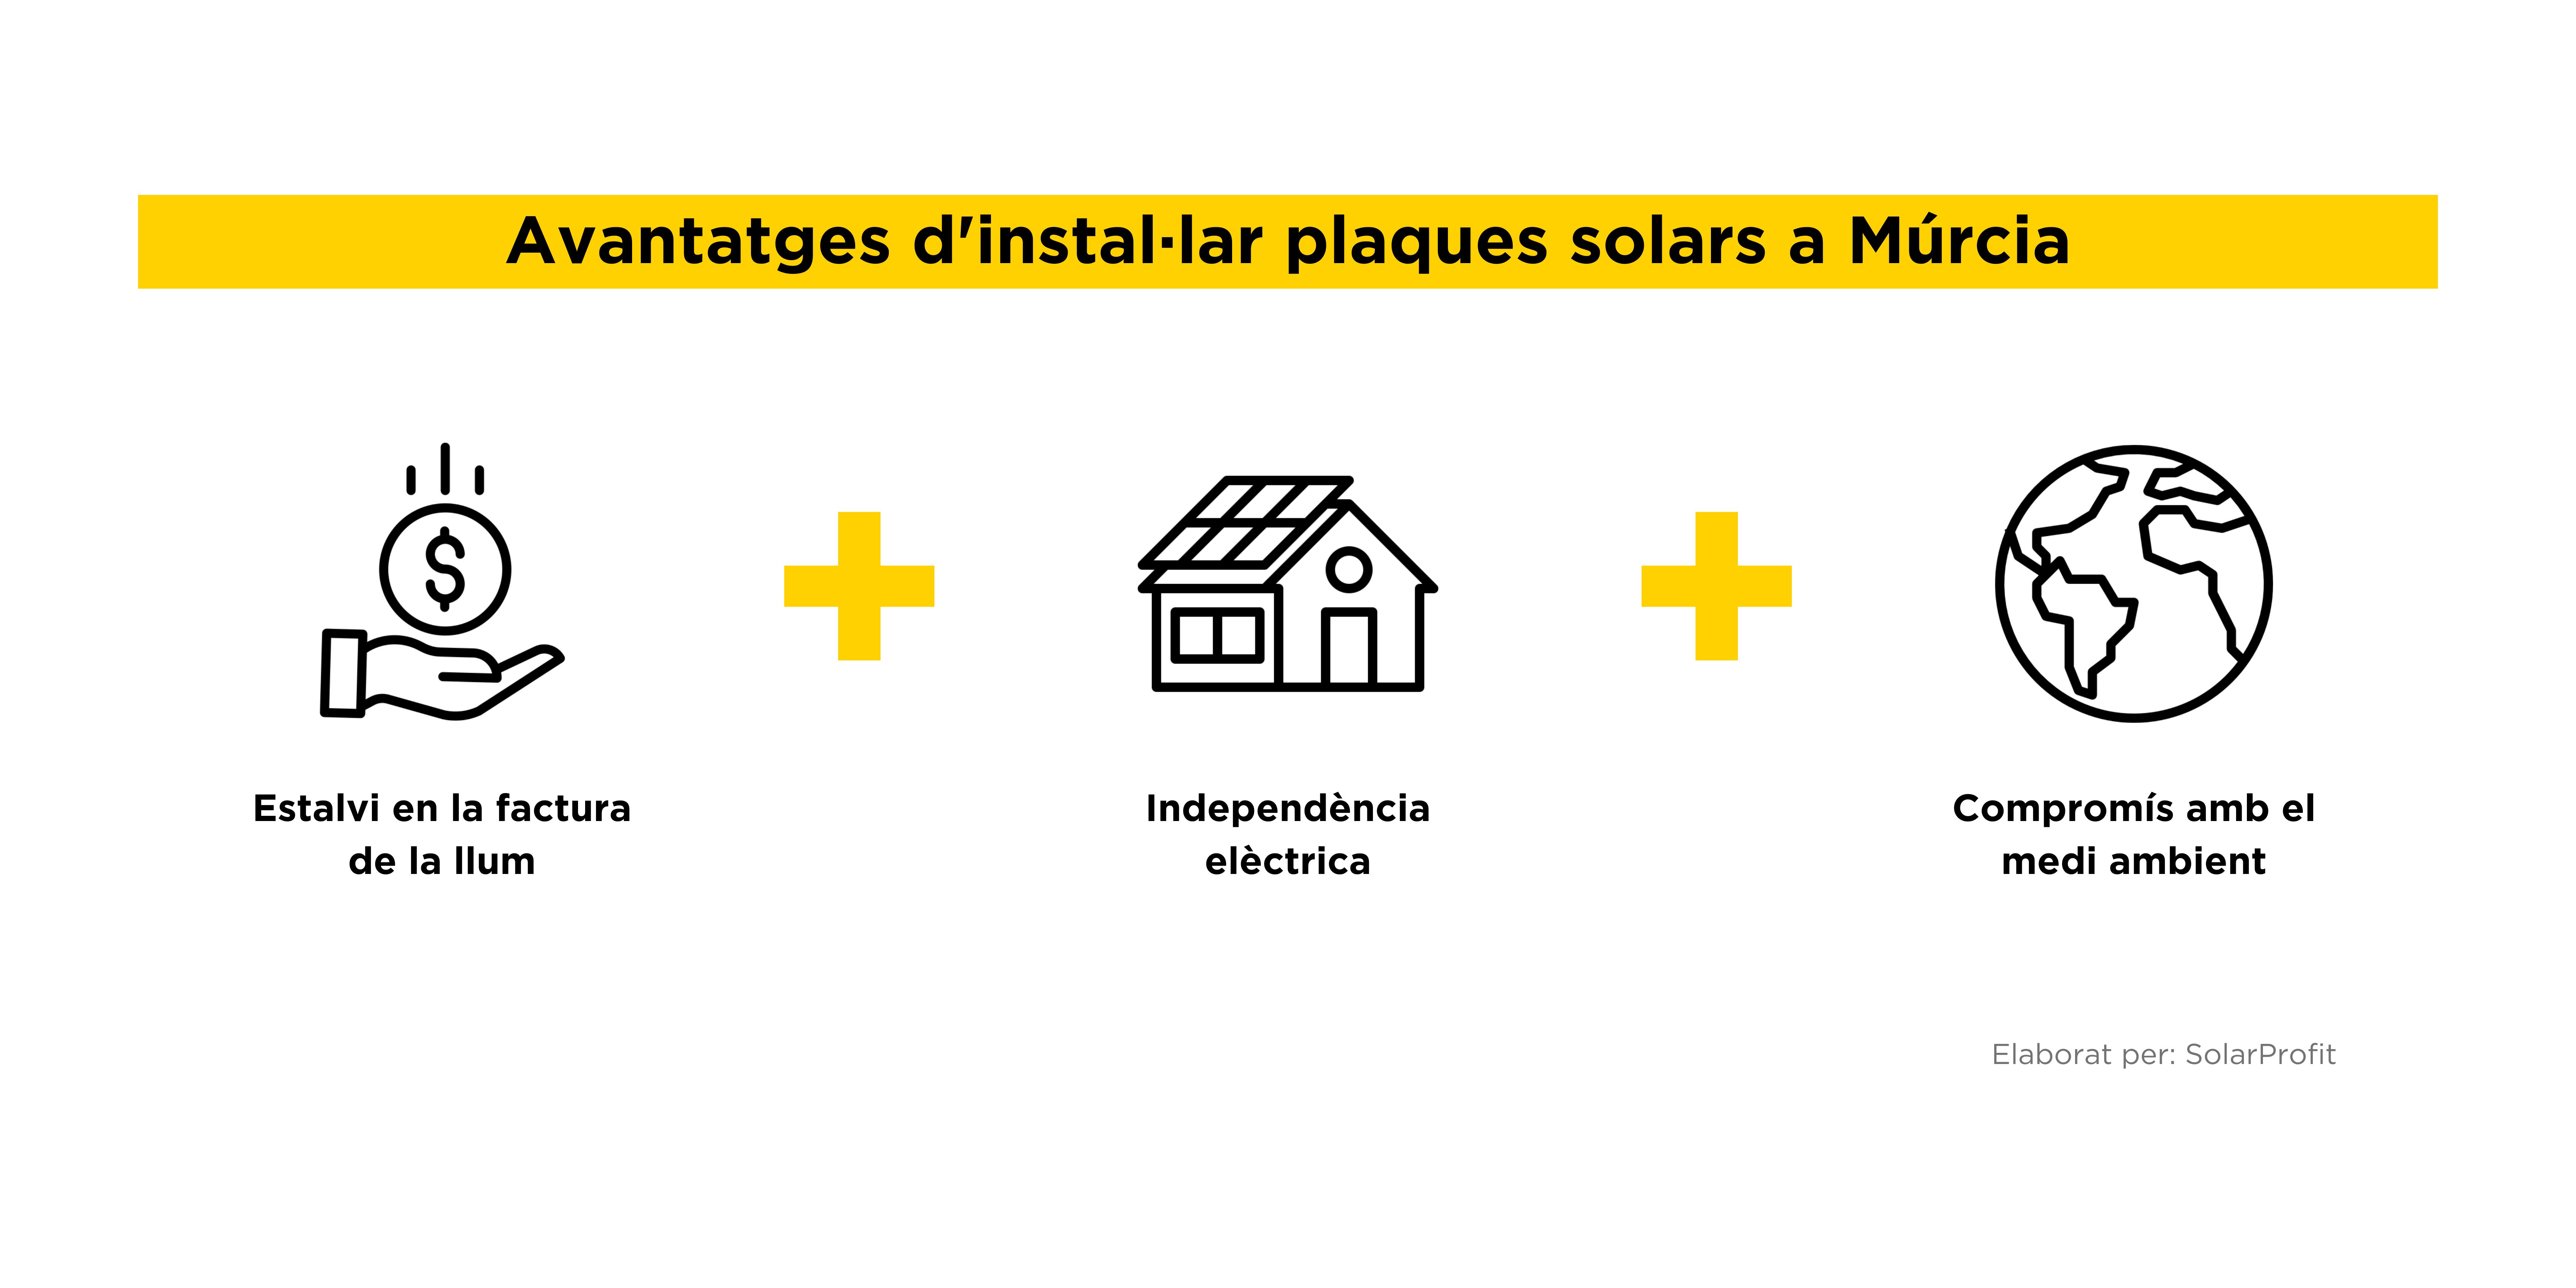 Avantatges plaques solars Murcia